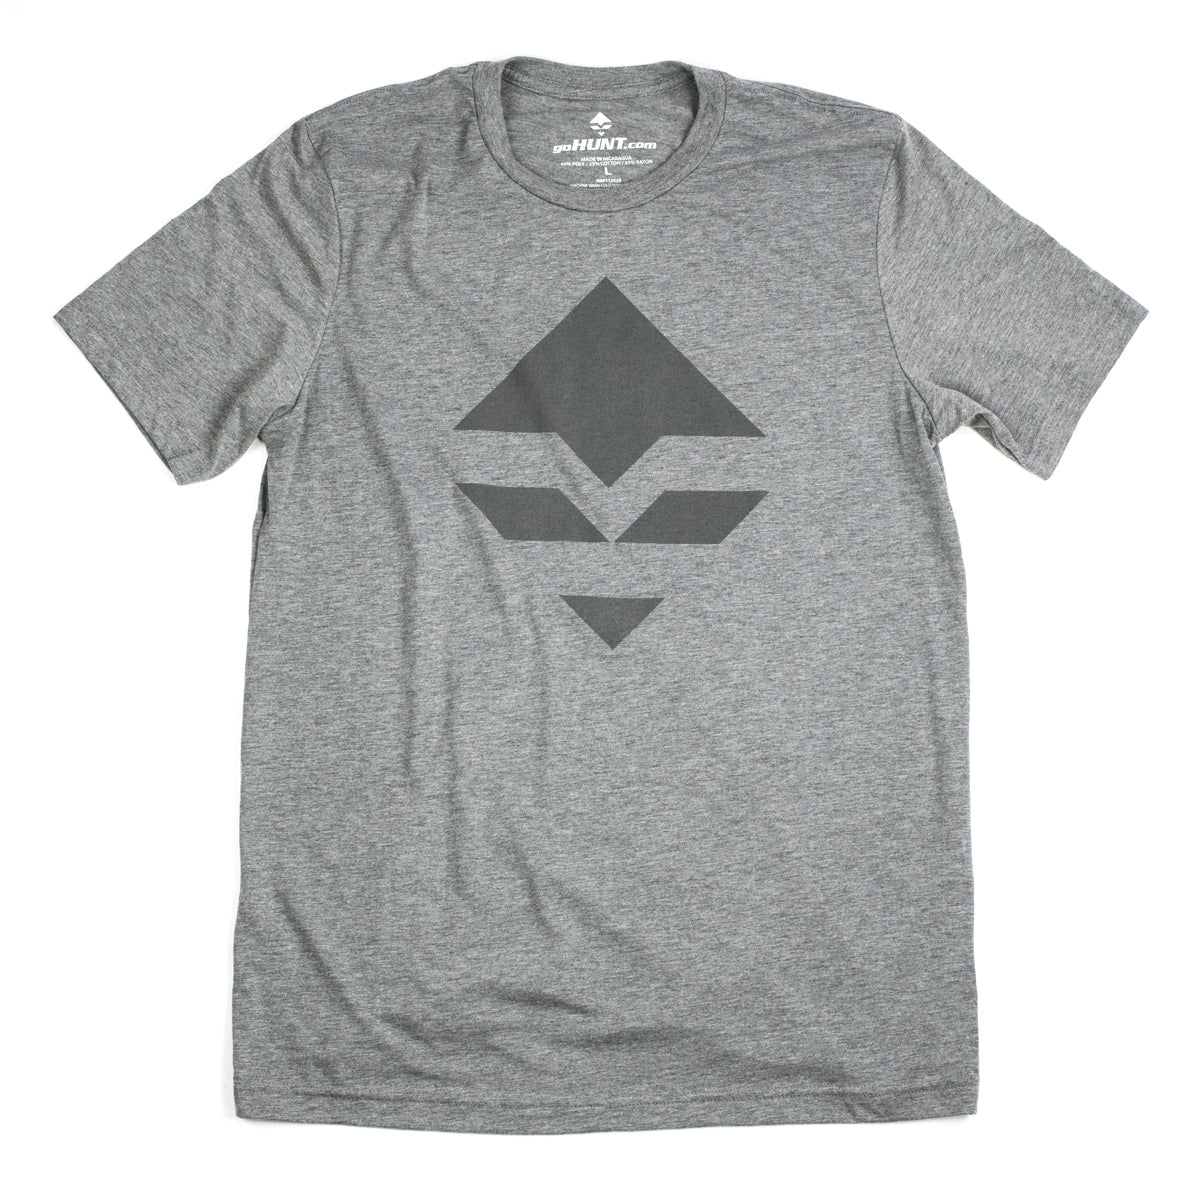 goHUNT Grey & Dark Grey T-Shirt by goHUNT | Apparel - goHUNT Shop